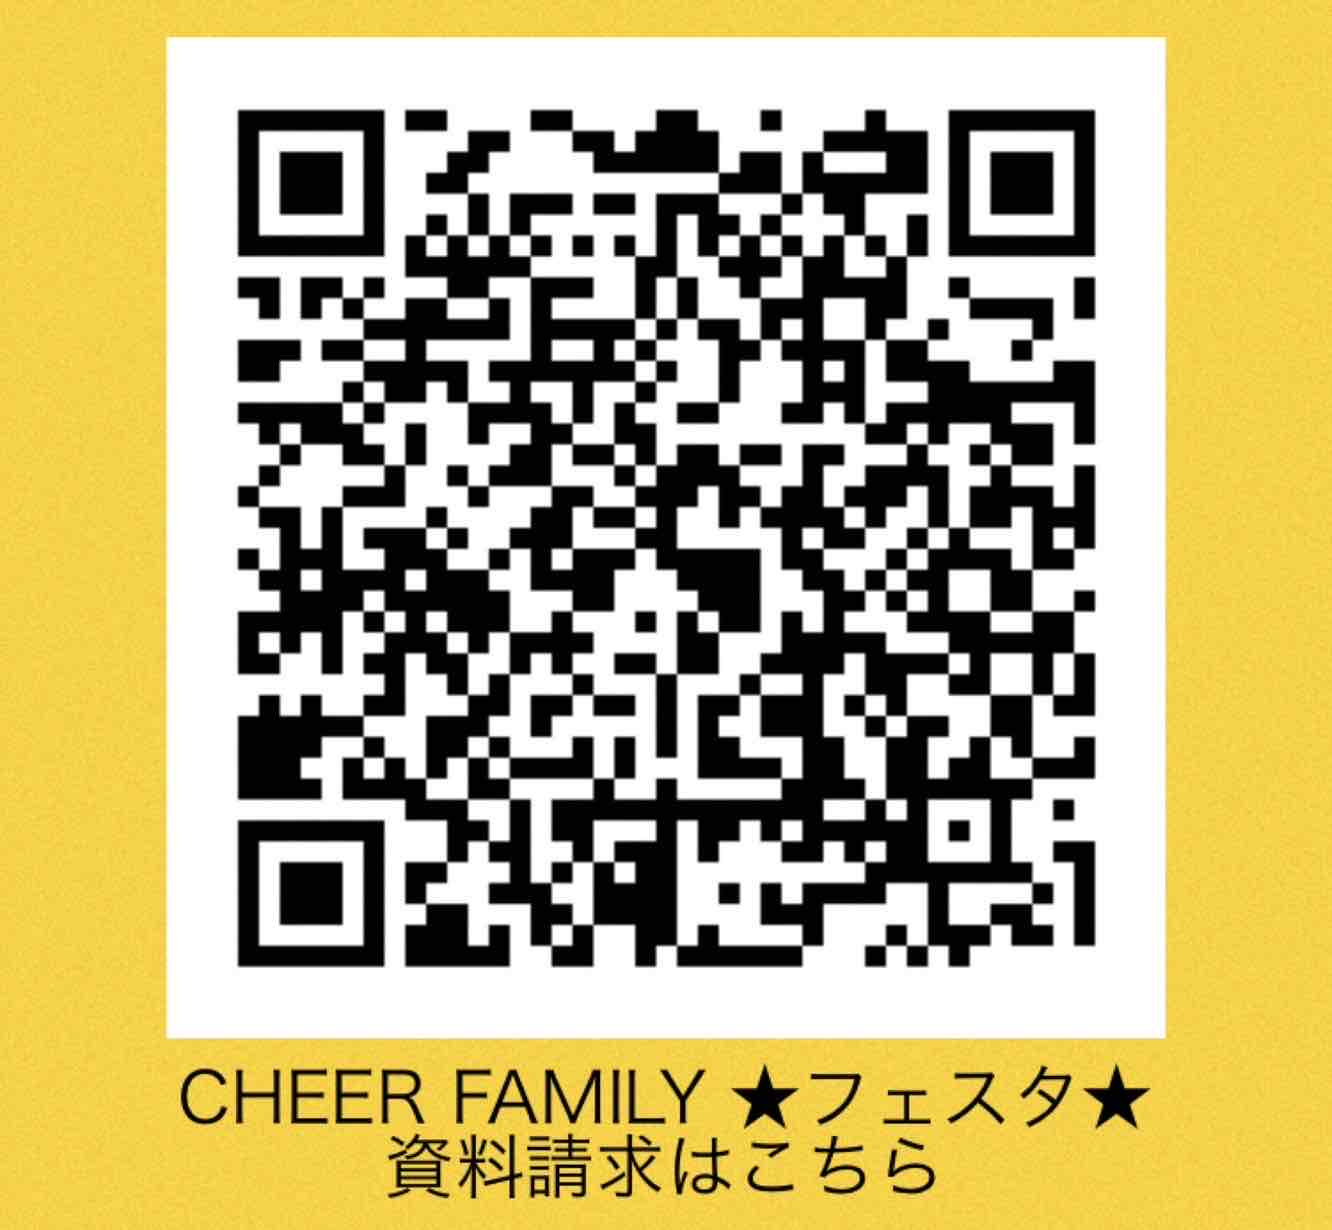 CHEER FAMILY ★フェスタ★